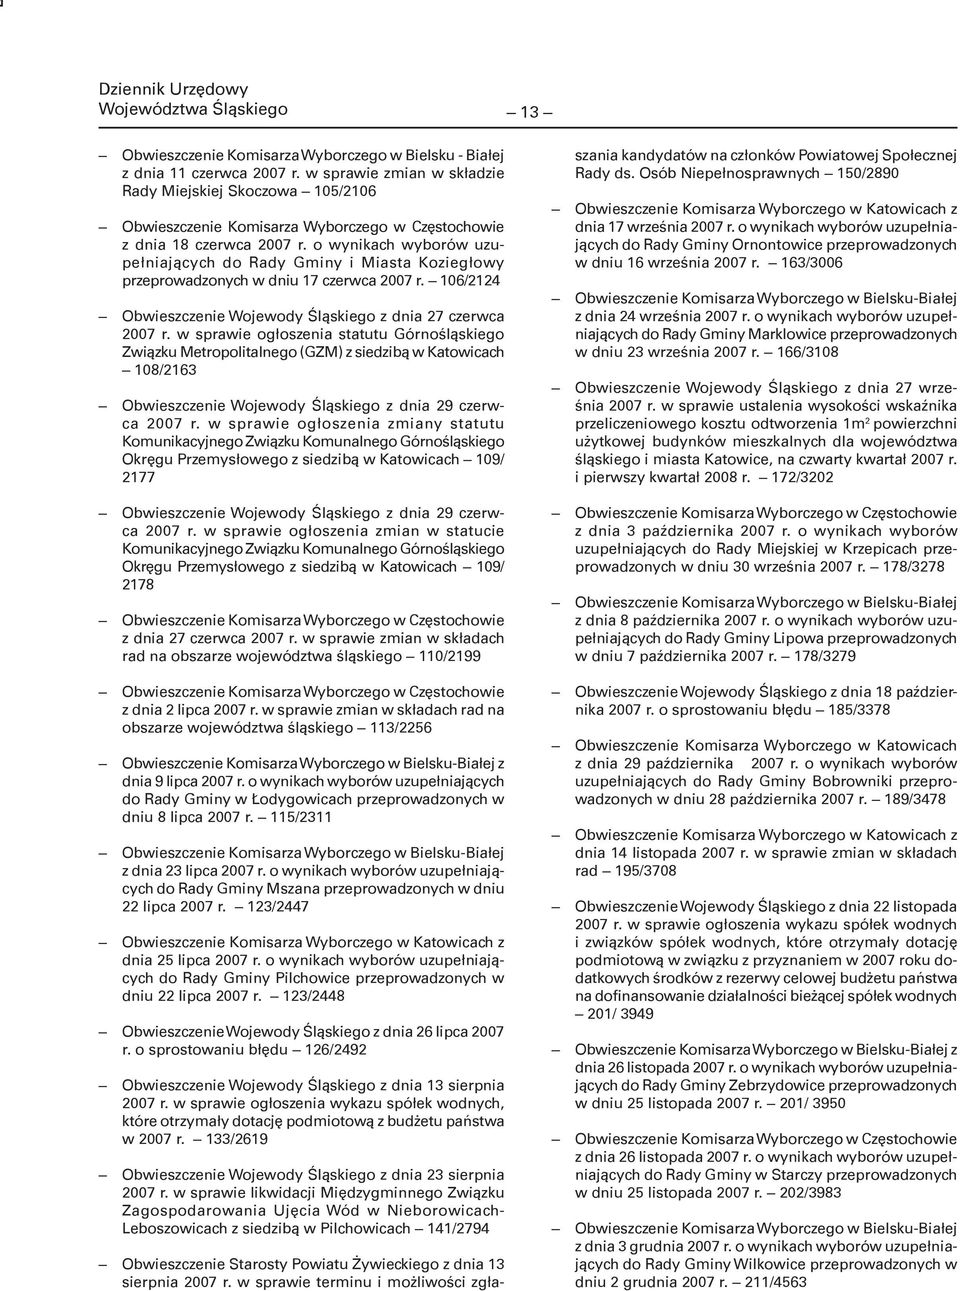 o wynikach wyborów uzupełniających do Rady Gminy i Miasta Koziegłowy przeprowadzonych w dniu 17 czerwca 2007 r. 106/2124 Obwieszczenie Wojewody Śląskiego z dnia 27 czerwca 2007 r.